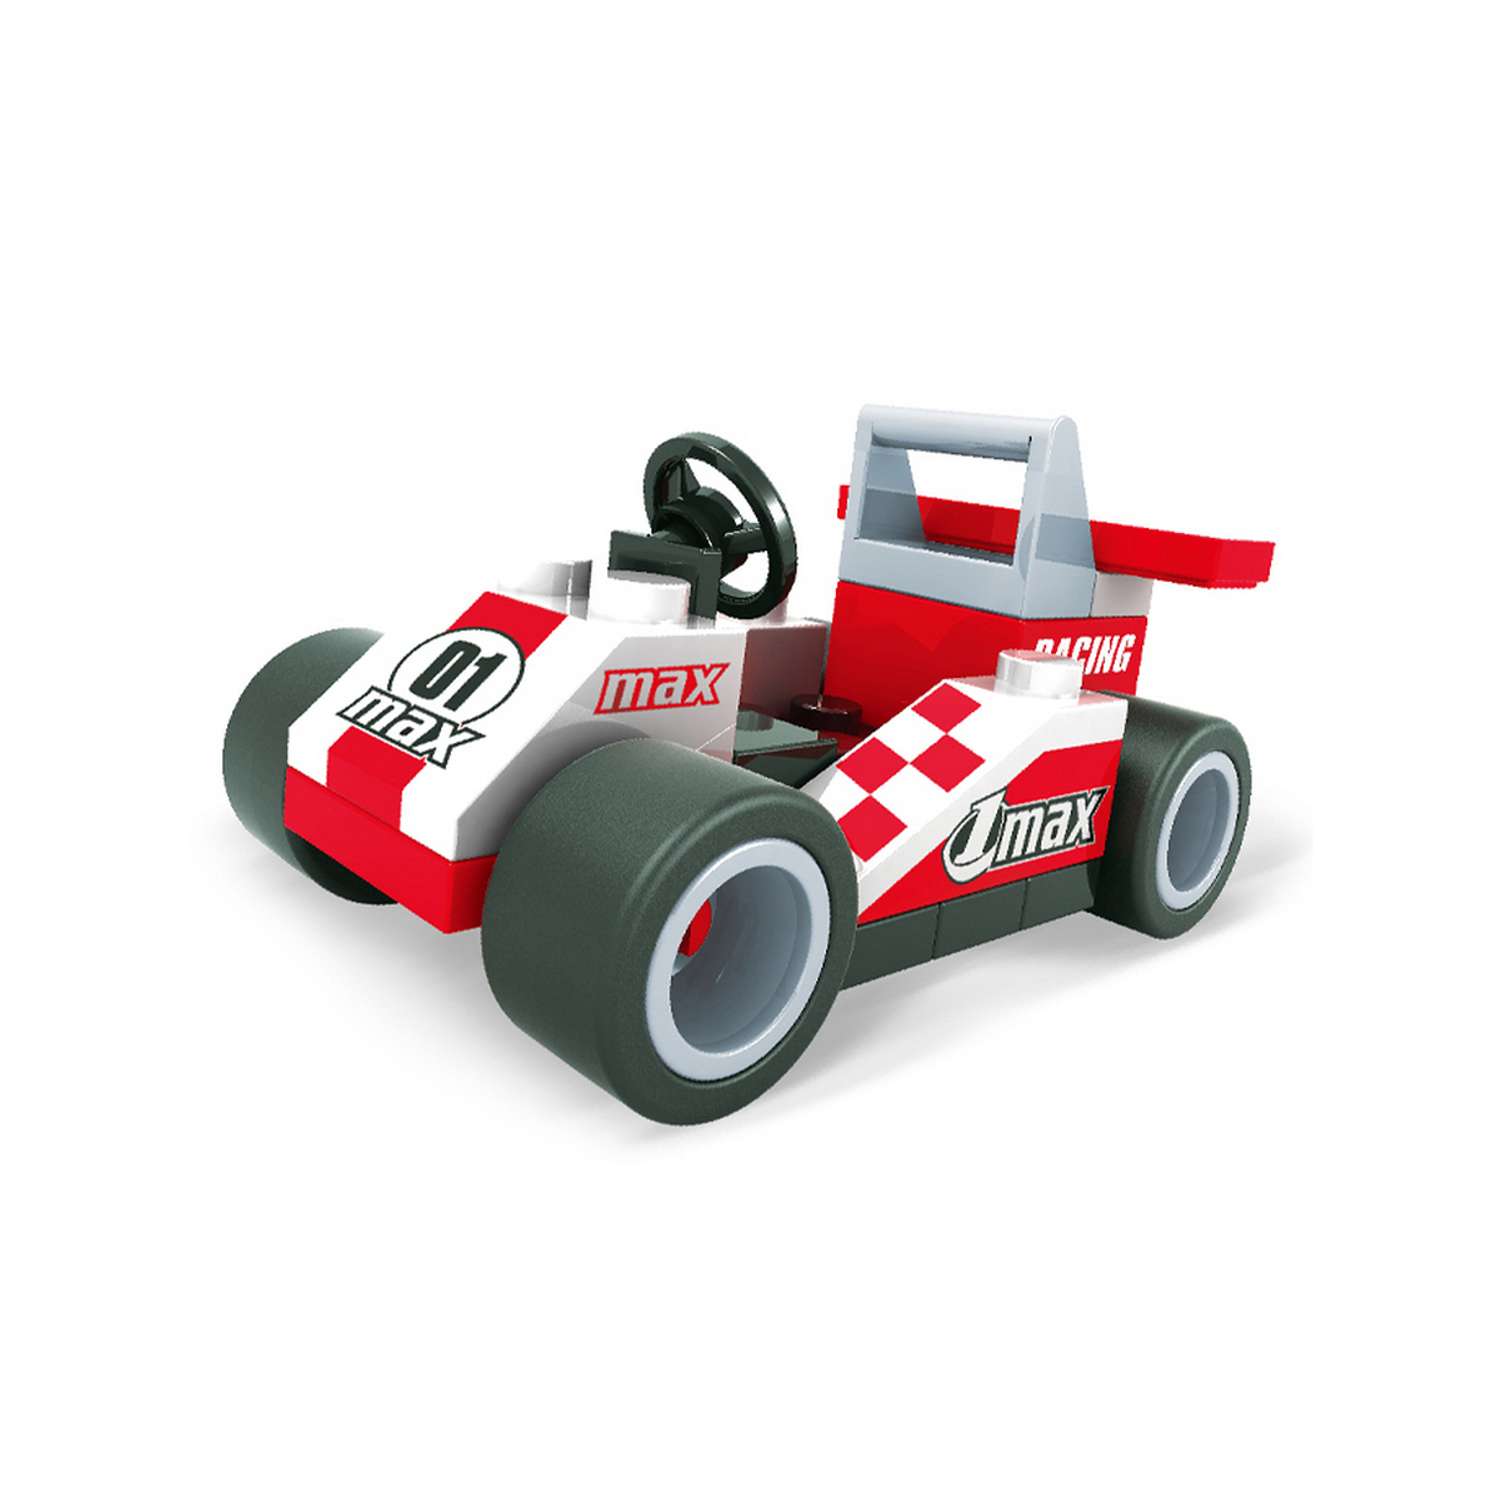 Конструктор AUSINI Формула чемпионов: Карт 01 max бело-красный 36 деталей - фото 1